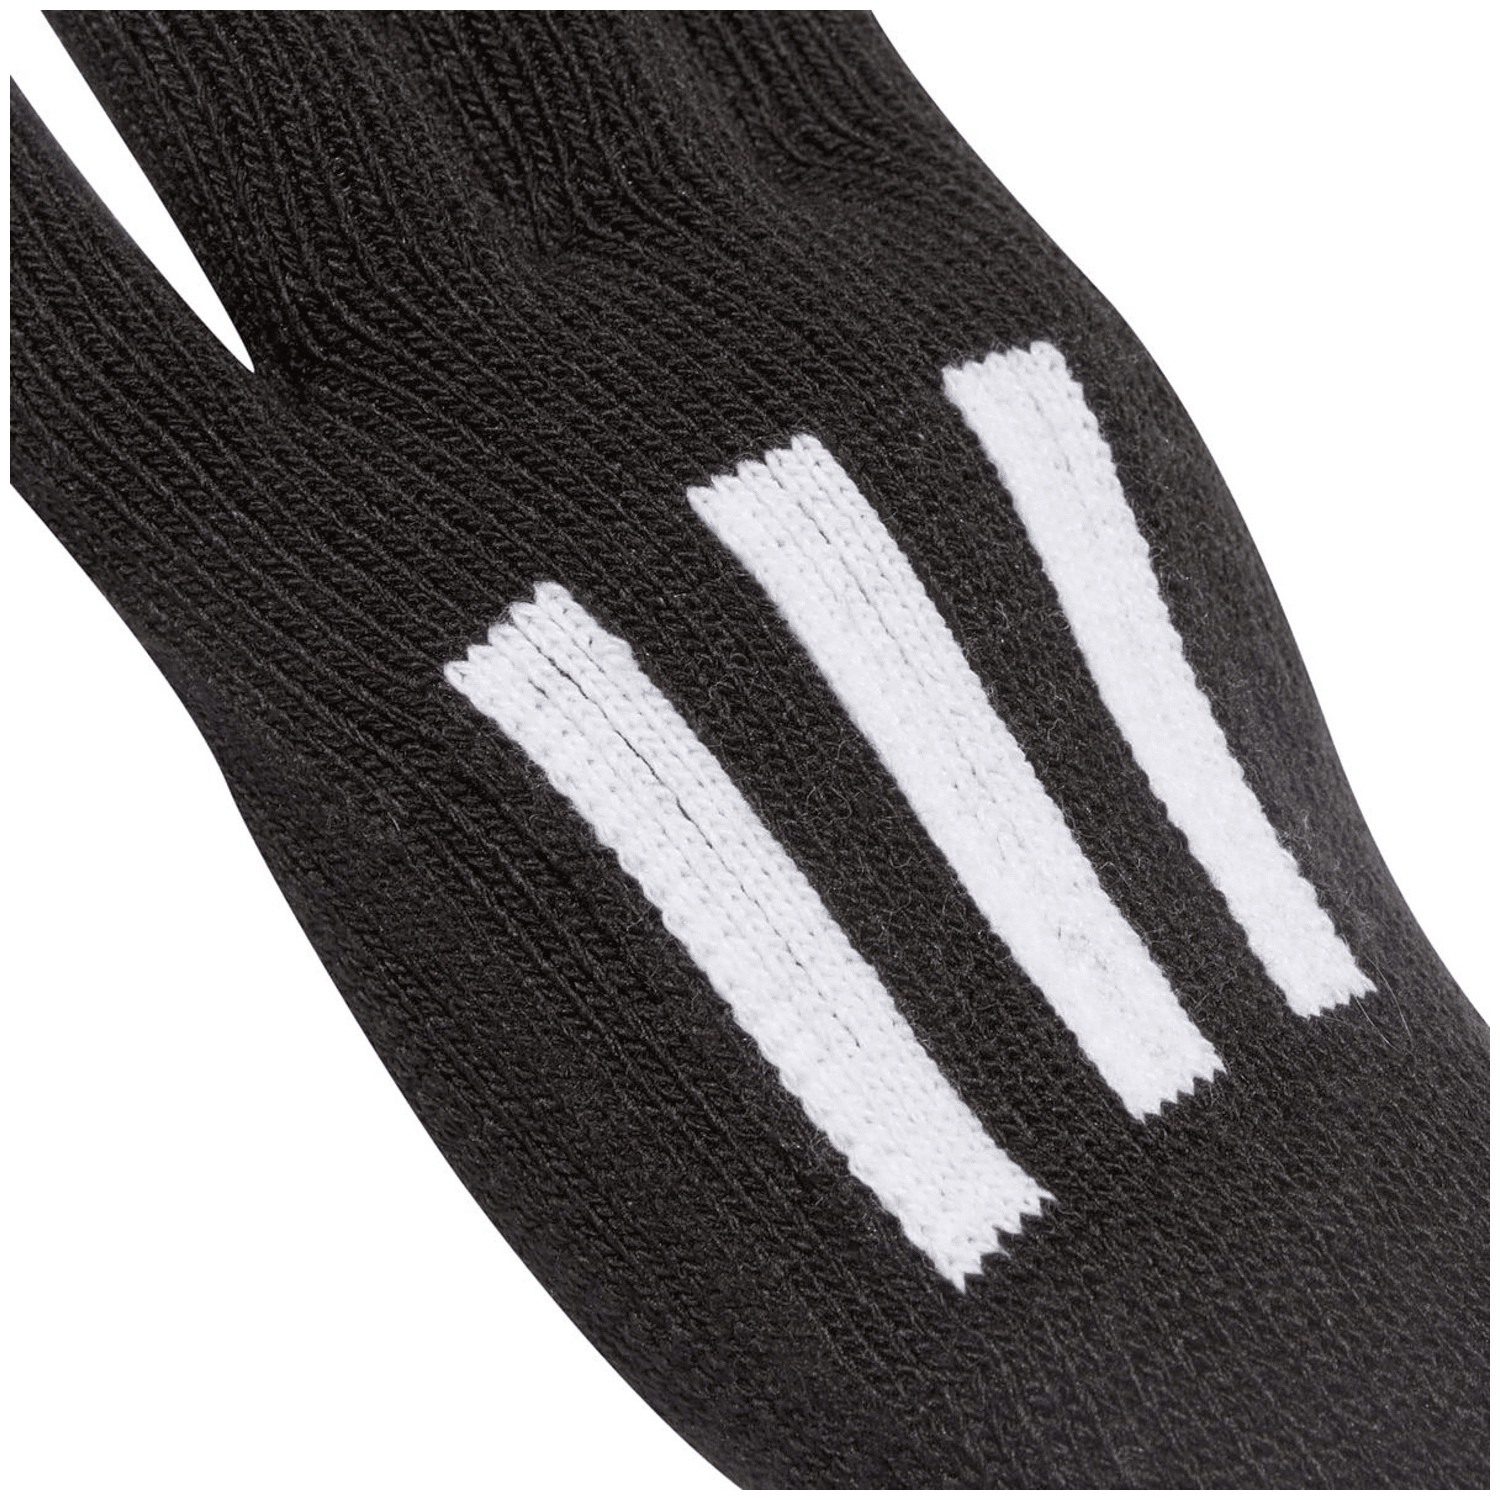 Adidas 3-Streifen Conductive Handschuhe Unisex